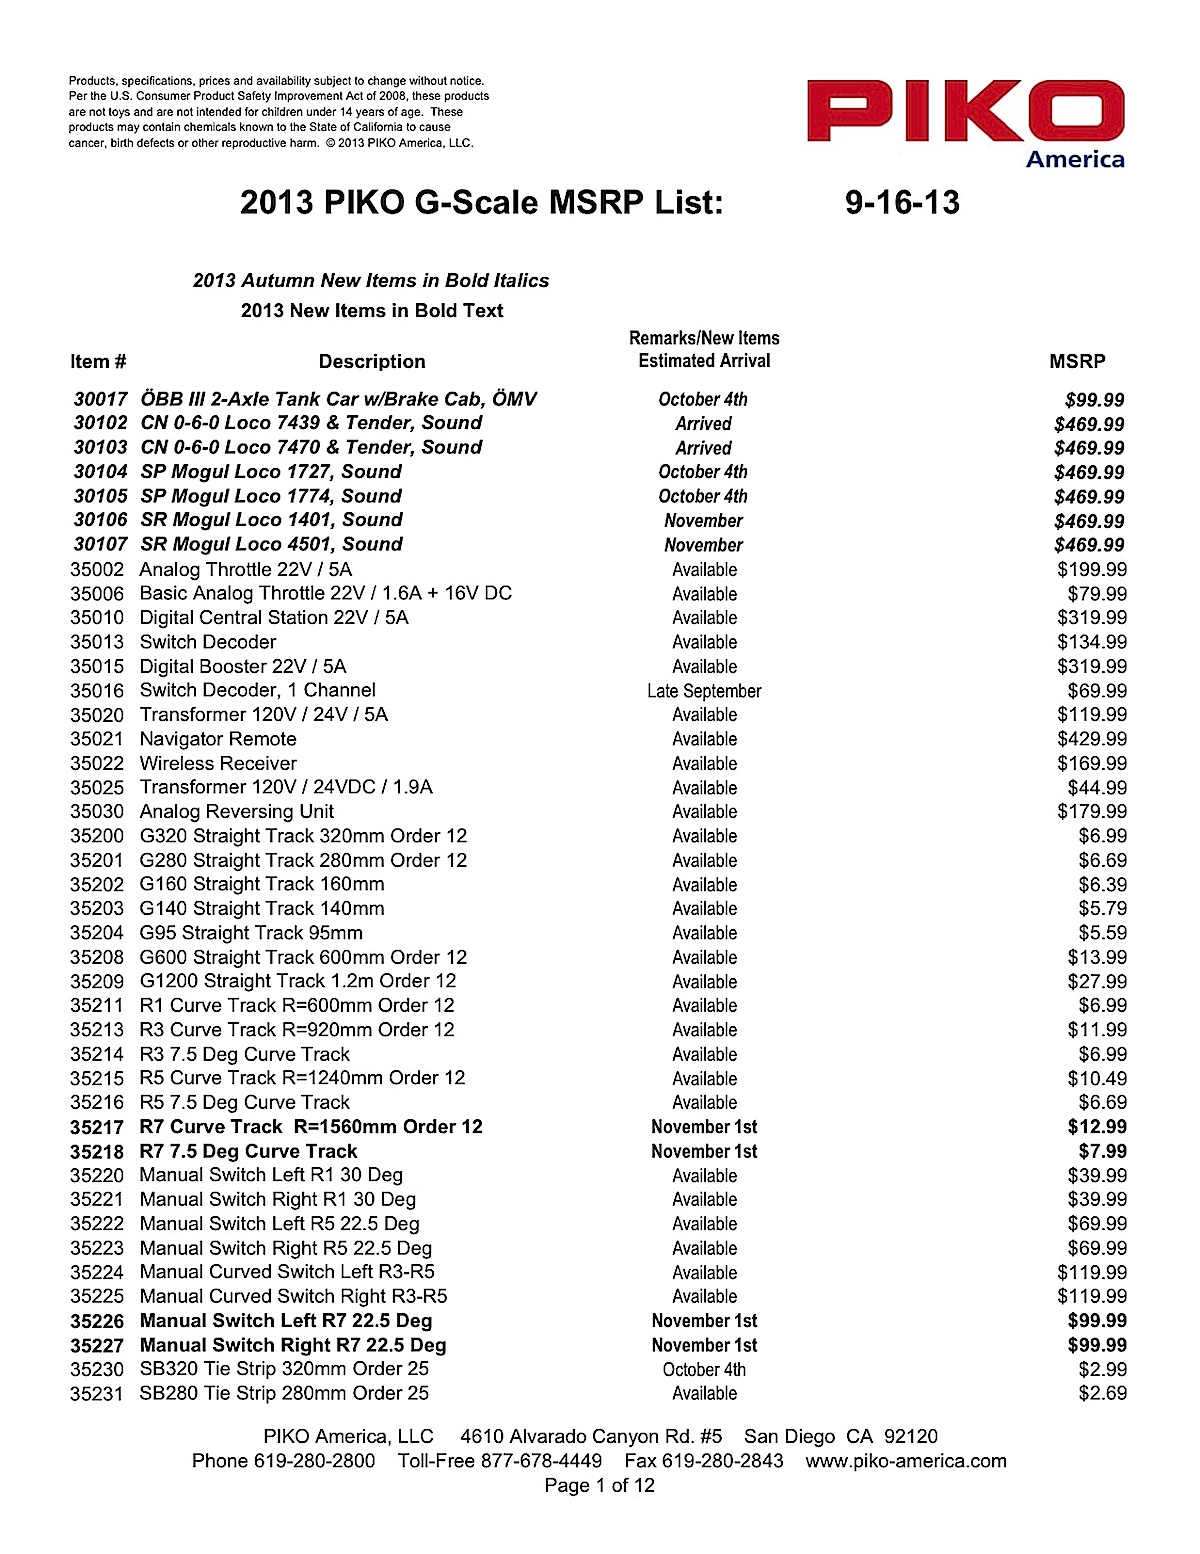 PIKO America Preisliste (Price list) 2013 in US Dollars